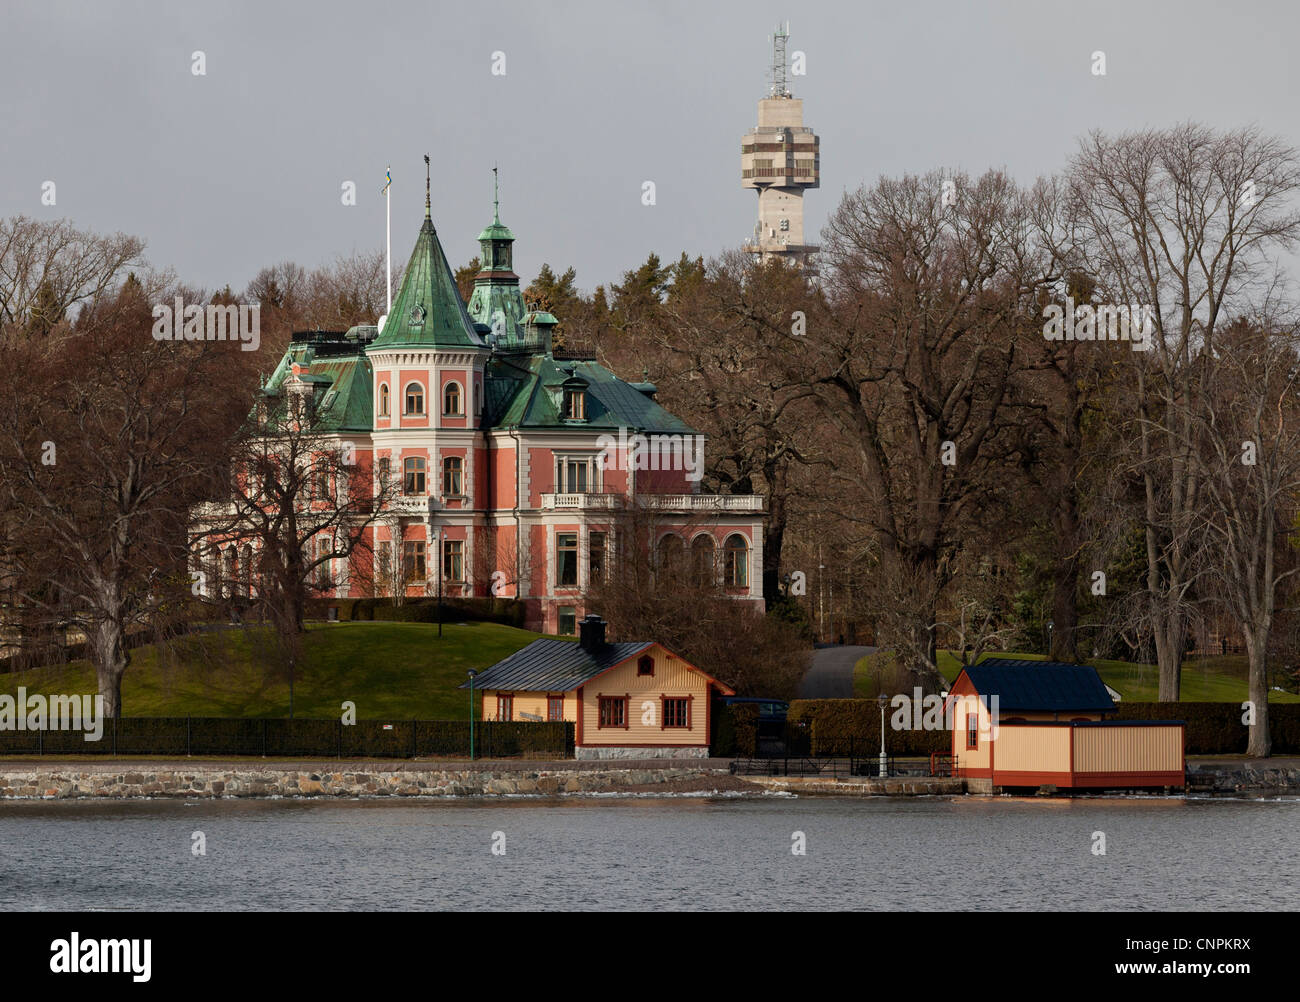 Haus des Archipels, in der Nähe von Stockholm, Schweden am Meer Stockfoto